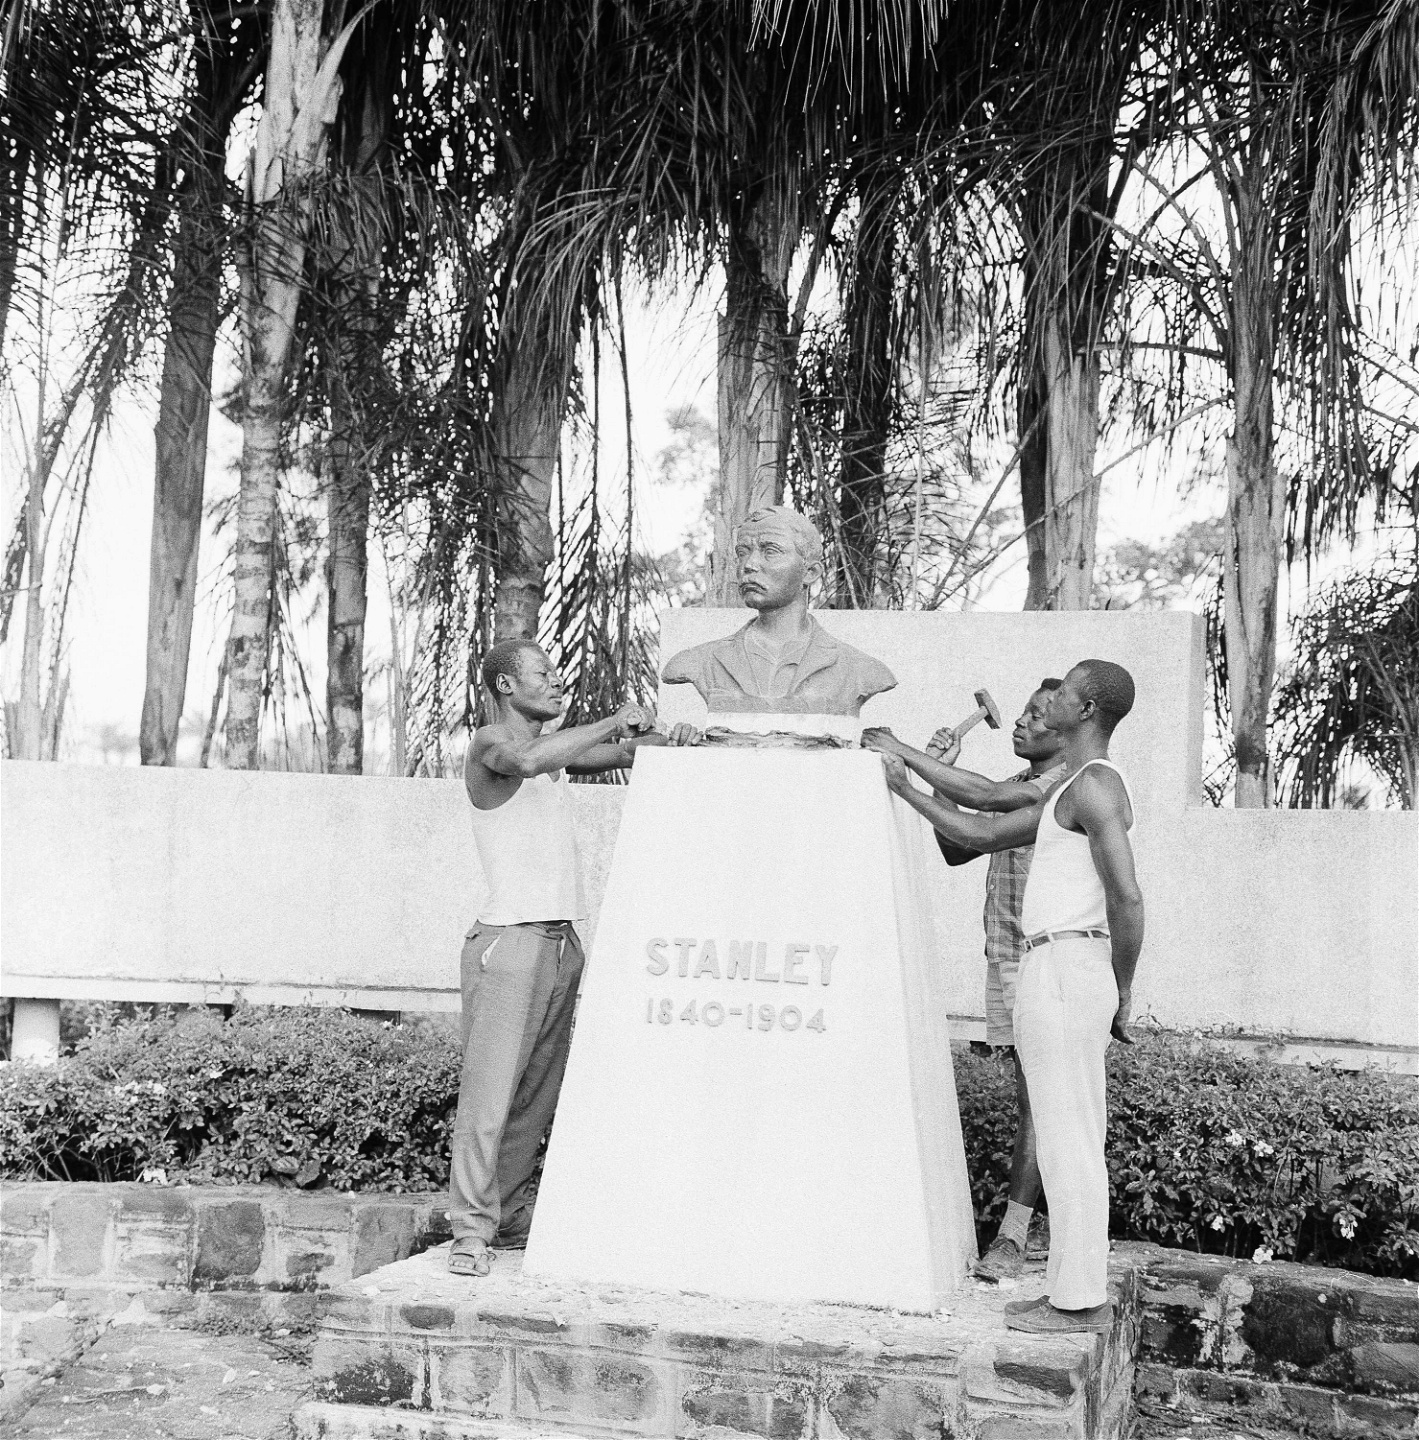 En byst av upptäcksresanden Henry Stanley tas bort från vägen till flygplatsen i Stanleyville 1961. Samtidigt avlägsnades statyer av Belgiens tidigare kungar Leopold och Albert i en våg av nationalism där man utplånade spår av den belgiska kolonialismen. Statyer av Patrice Lumumba, dåvarande frihetsrörelsens ledare och president från 1960, och andra kongolesiska ledare placerades ut i stället.